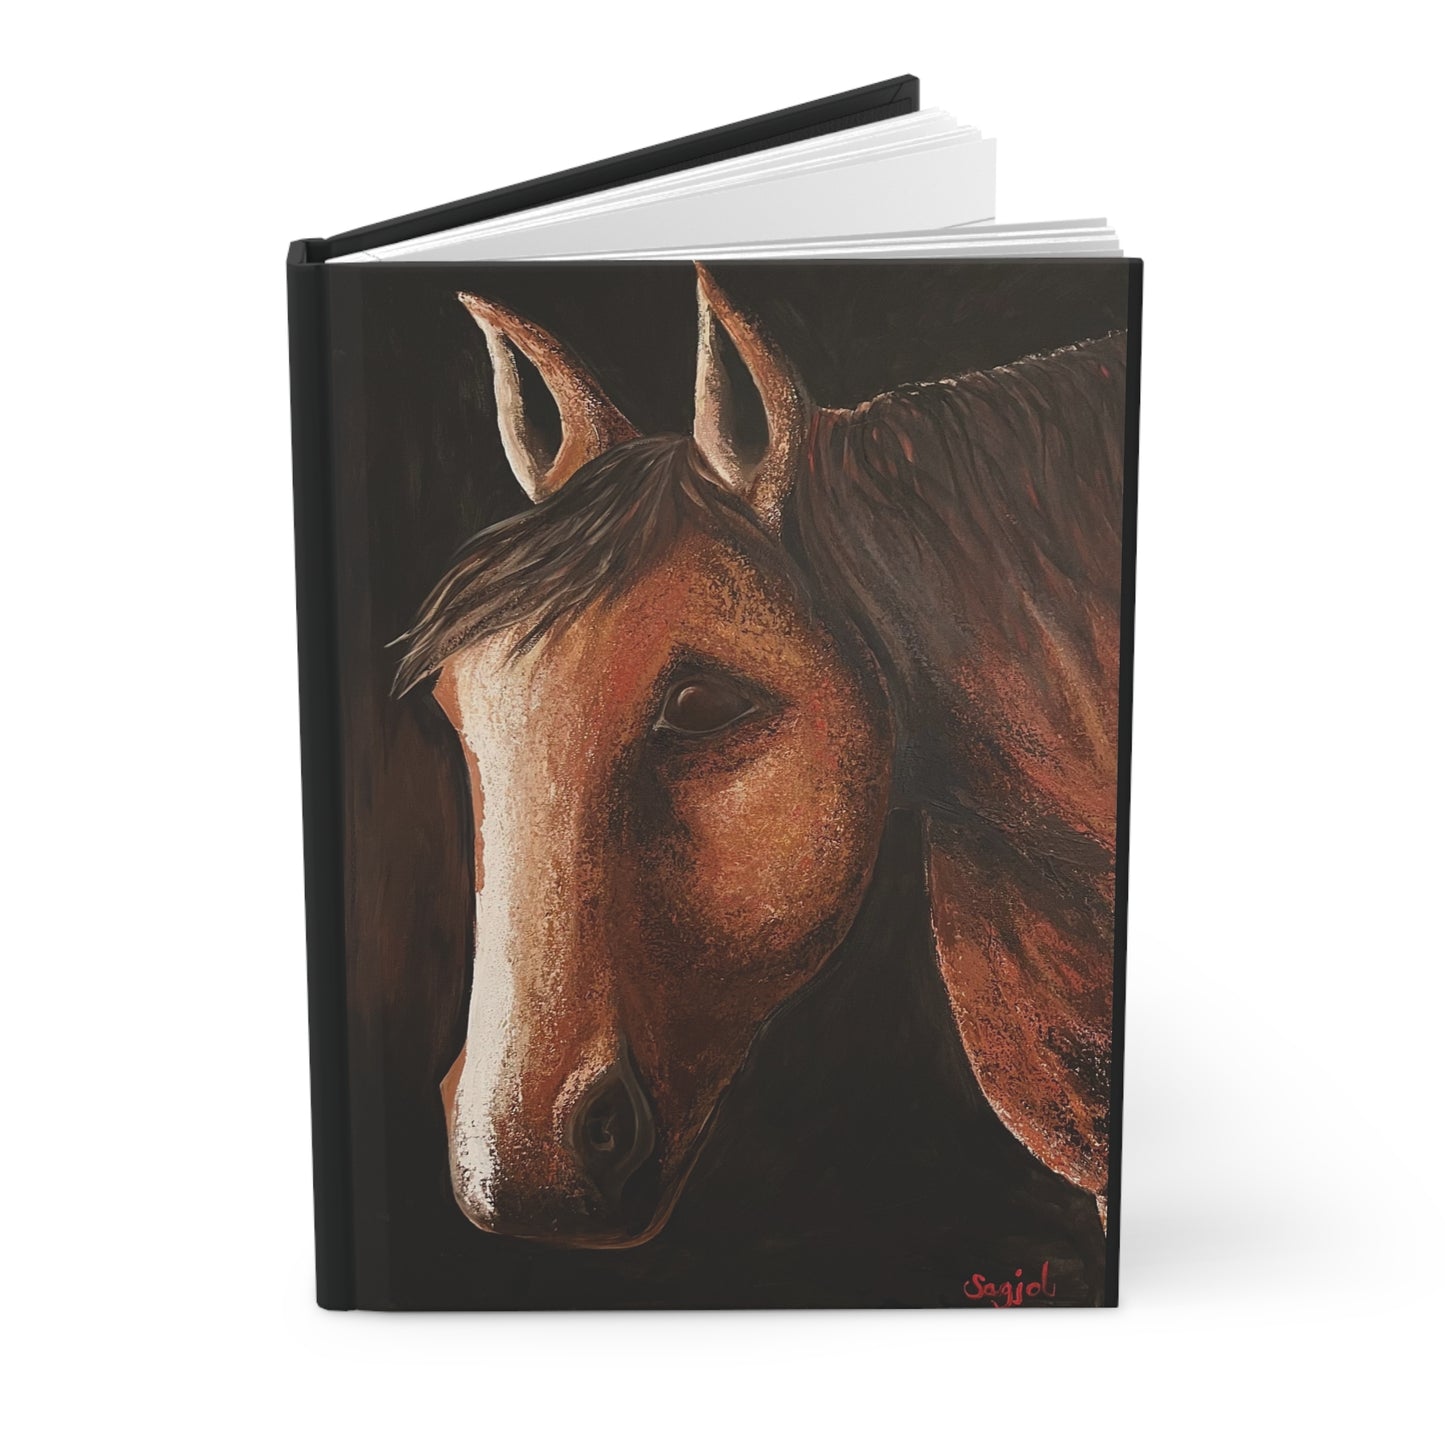 Hardcover Journal - Original Art Journal - Art Journal -Equestrian Art - Spirit